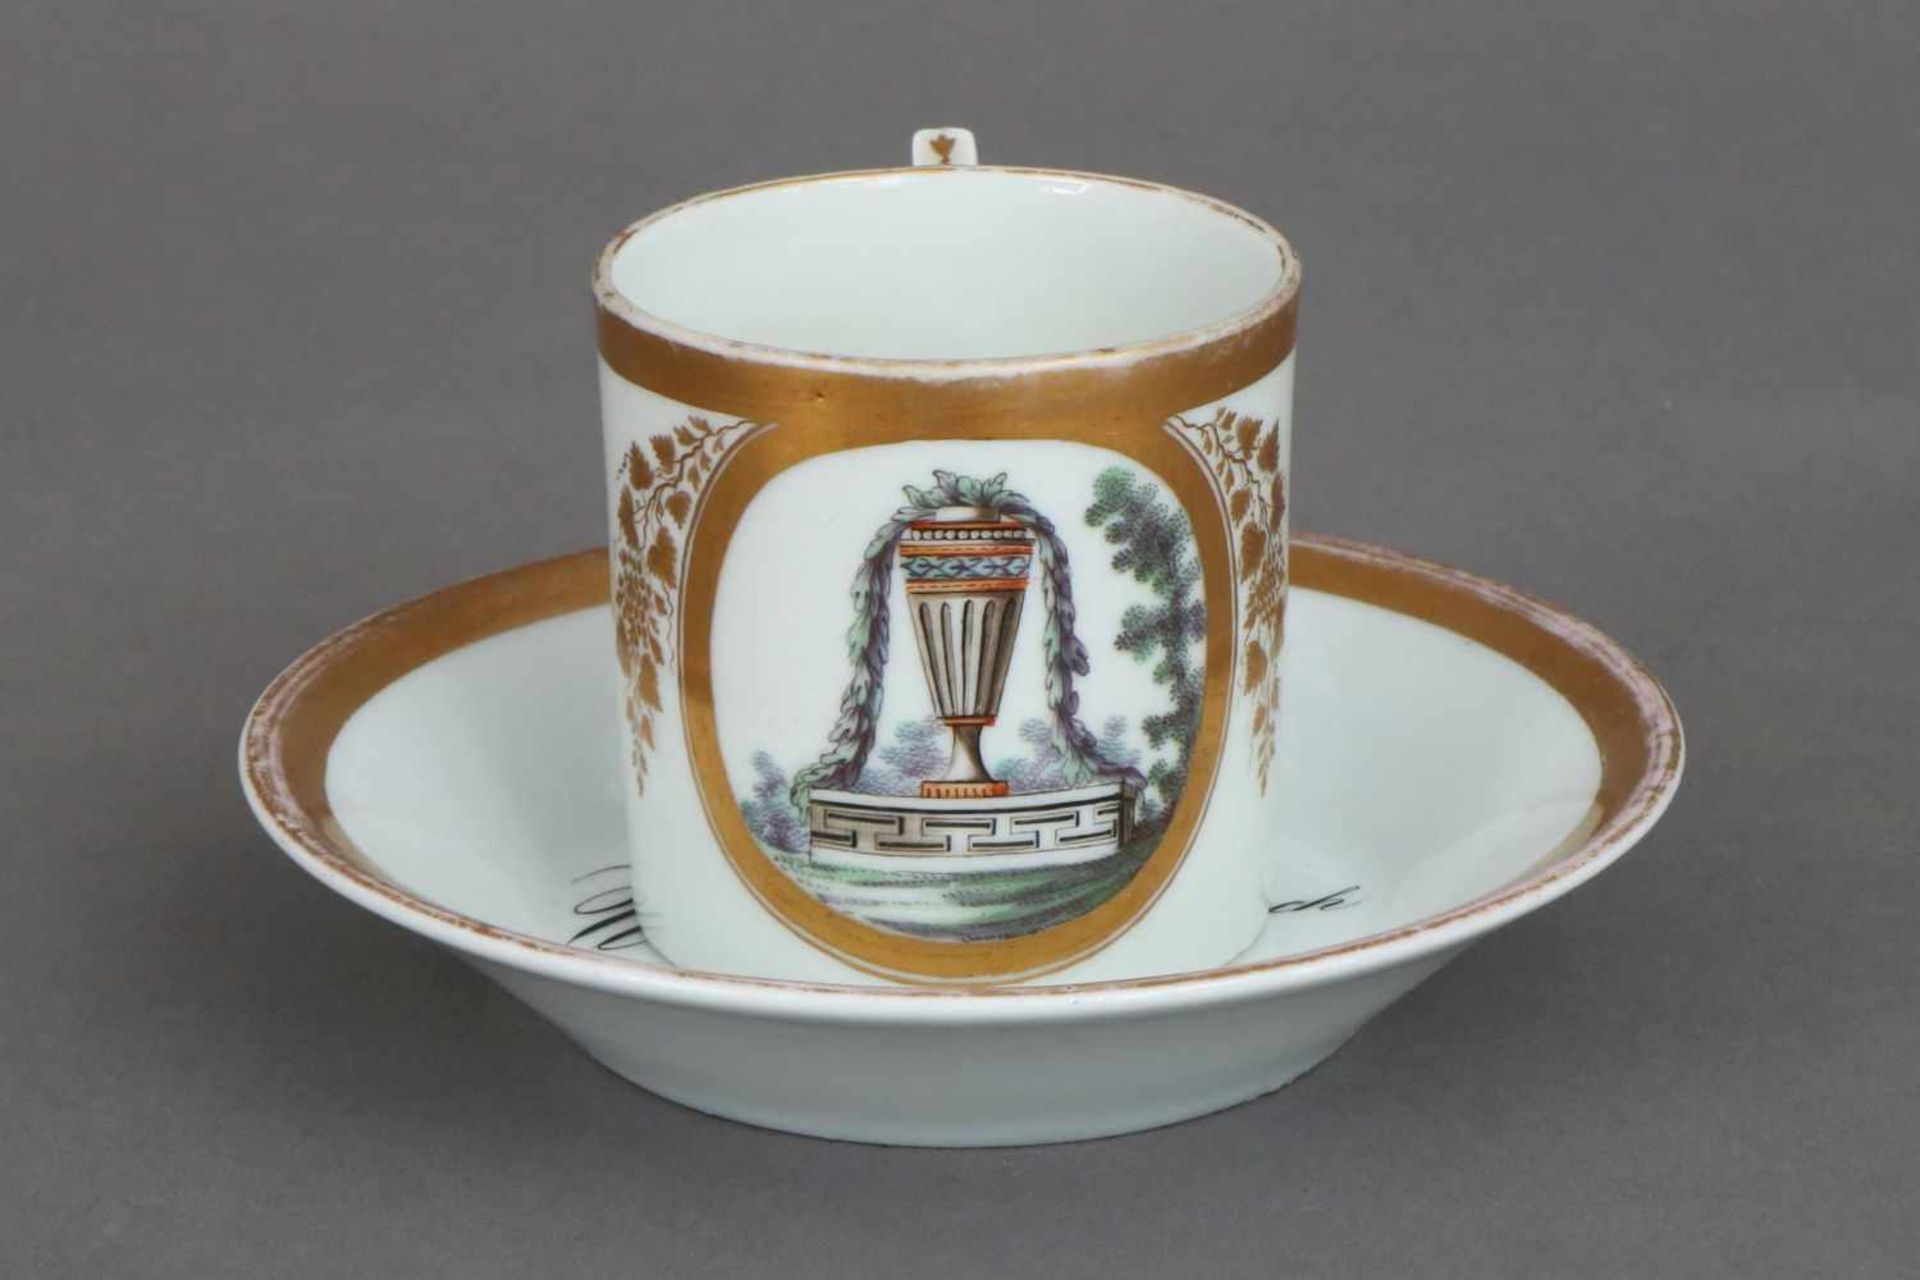 Empire TassePorzellan (ungemarkt), zylindrische Tasse mit J-förmigem Griff, ovale Kartusche mit